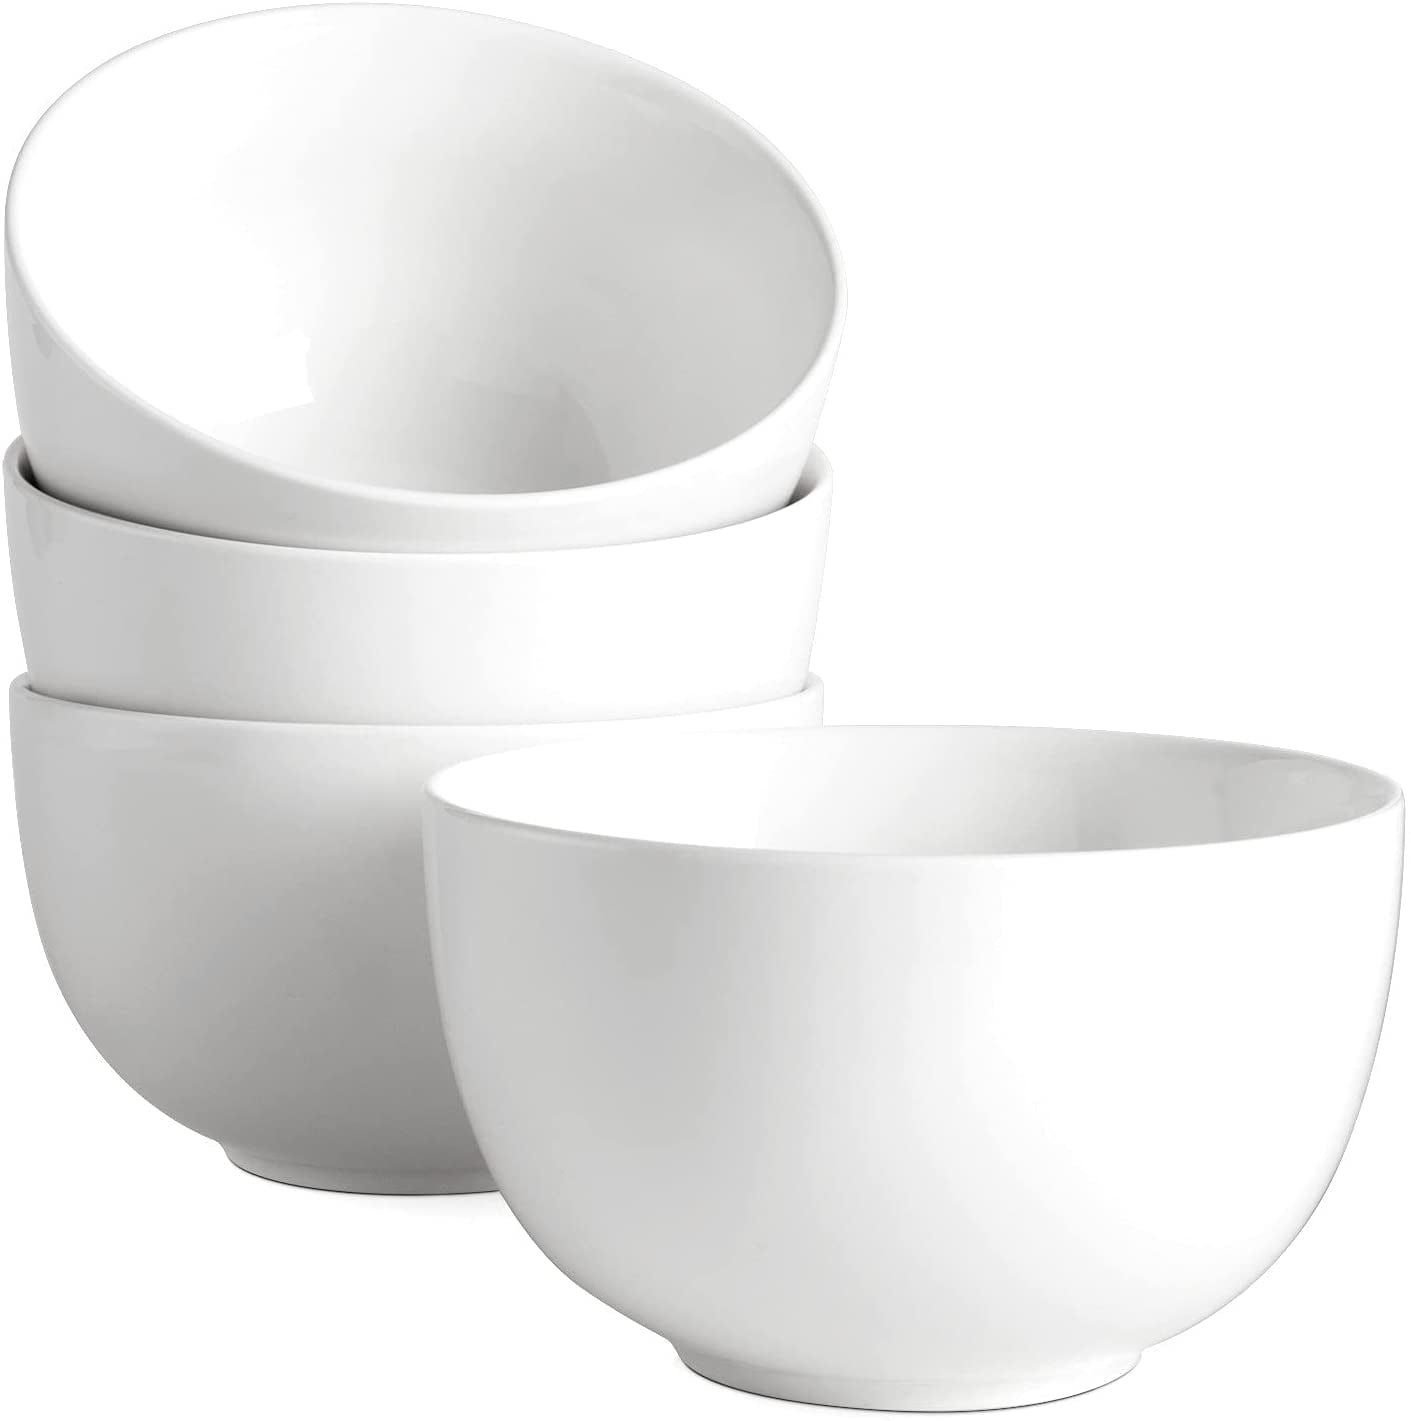 20 oz Porcelain Cereal/Soup Bowl Set White 6 packs Deep 